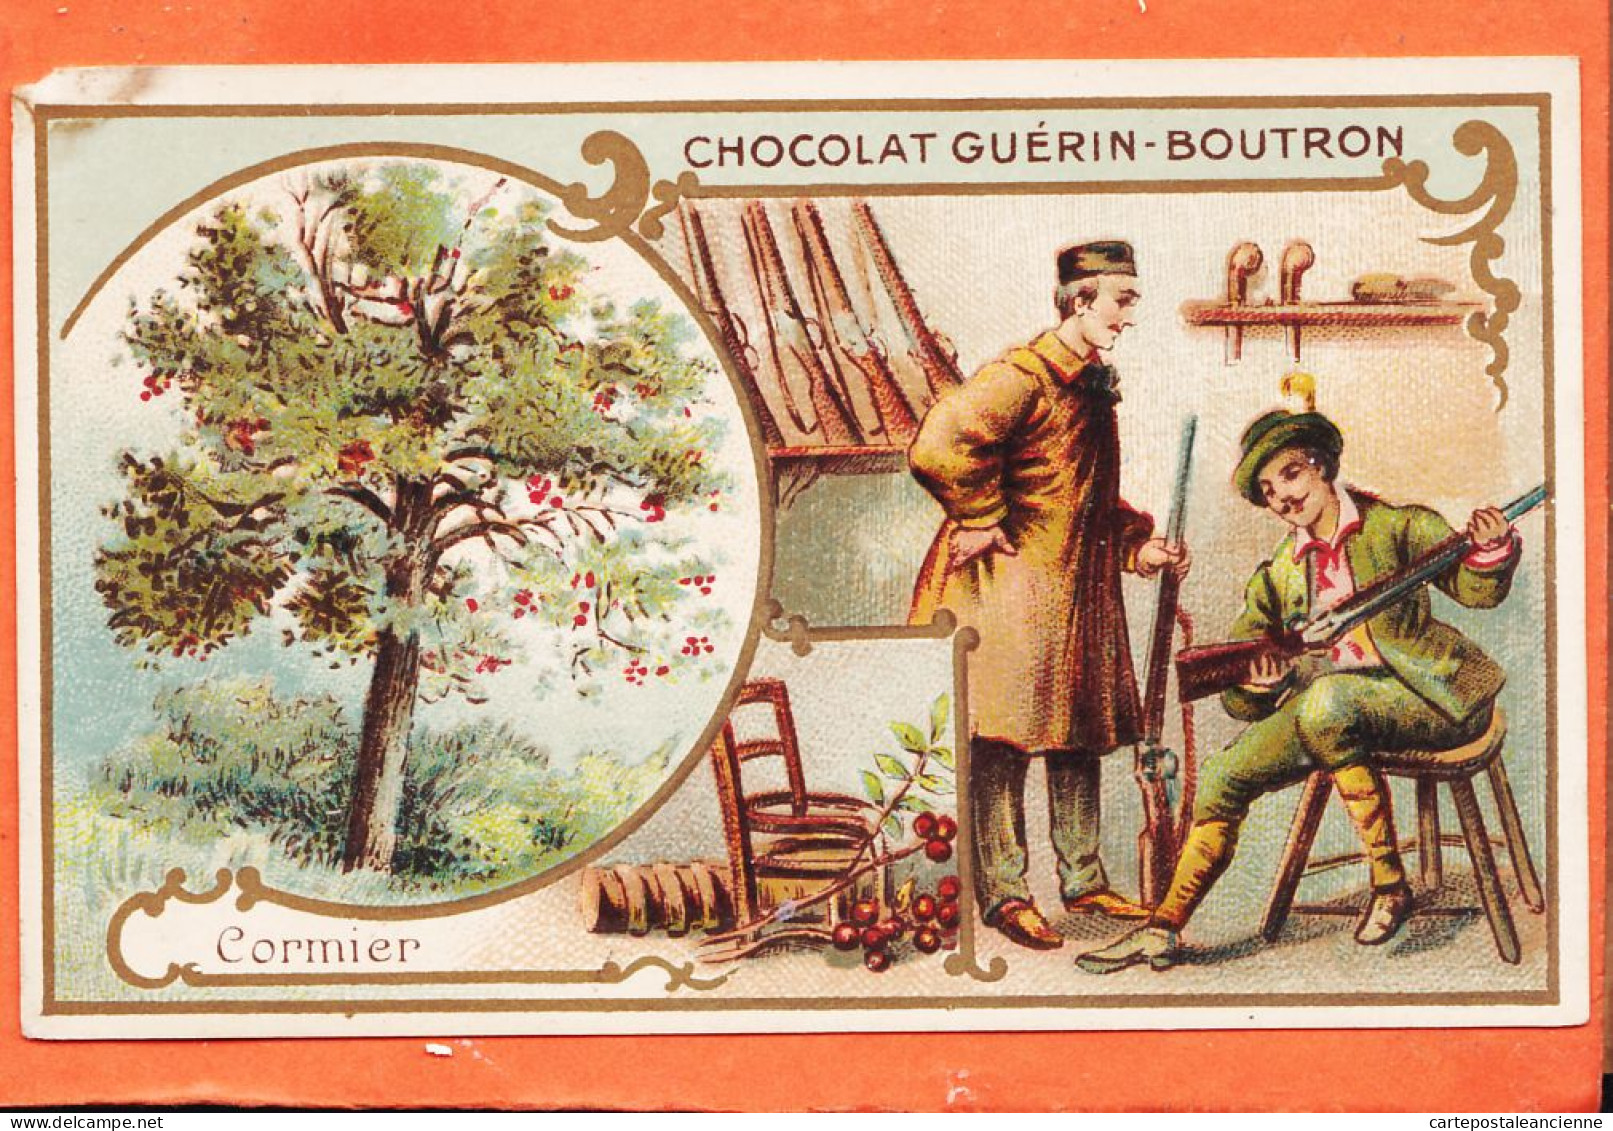 24827 /⭐ Chromo Chocolat GUERIN-BOUTRON ◉ CORMIER Bois Rougeatre Crosse Fusils ◉ PARIS Rue MAROC Poissonniere St-Sulpice - Guérin-Boutron